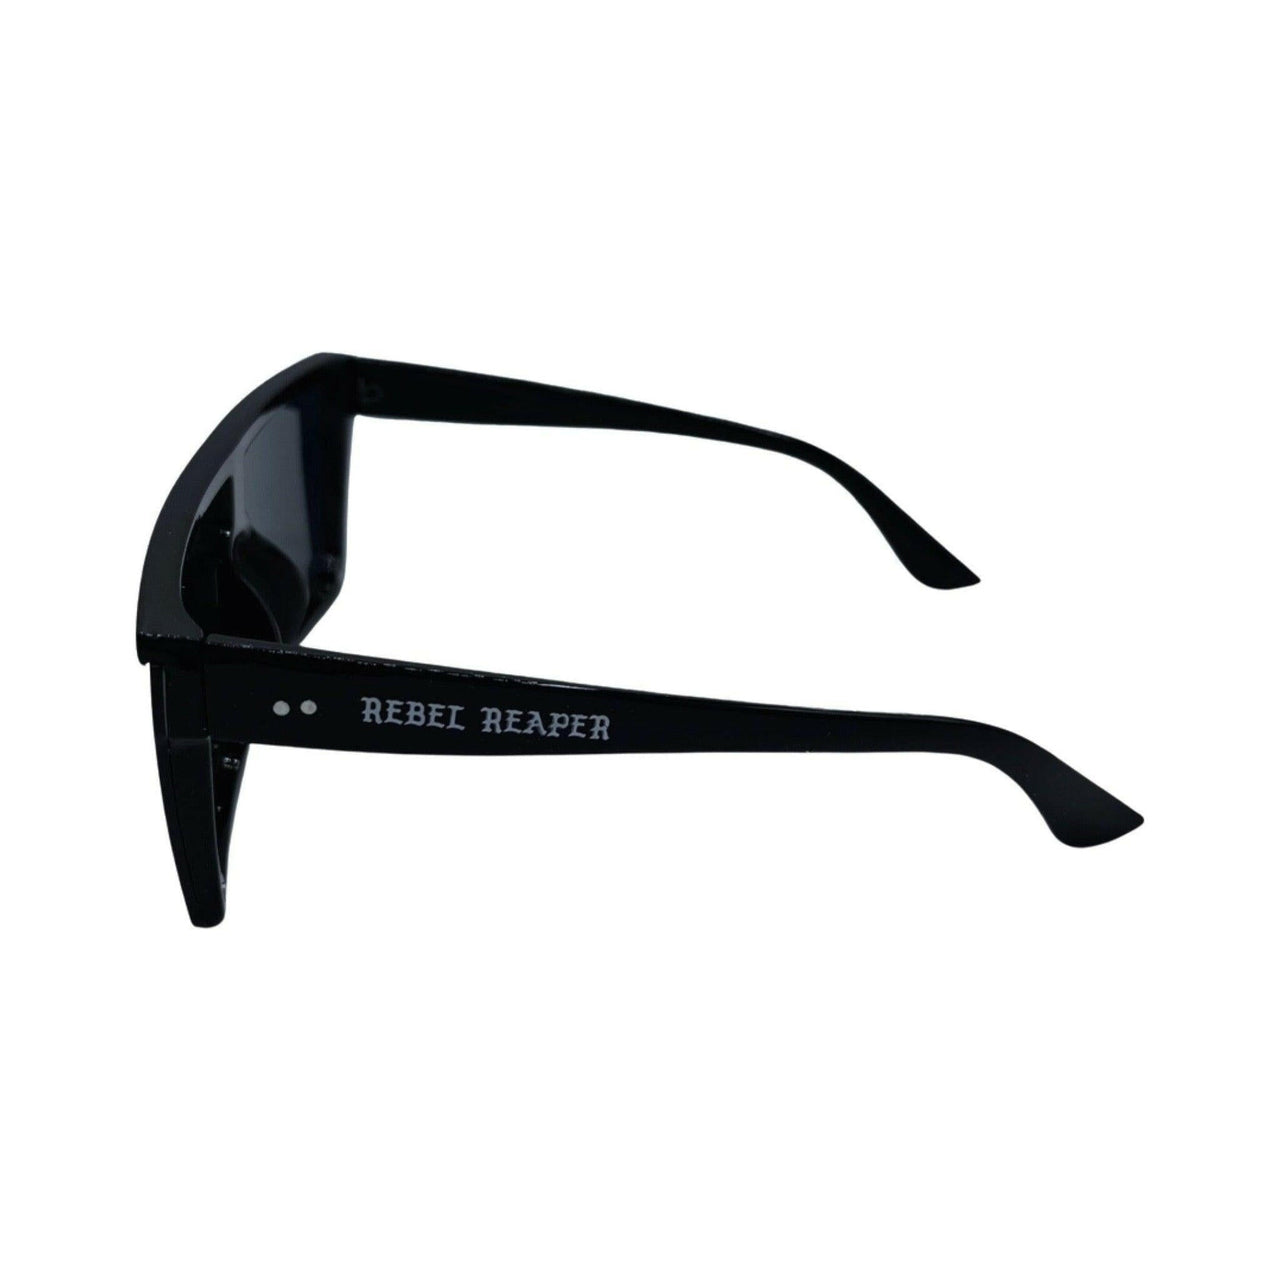 Black OG Sunglasses